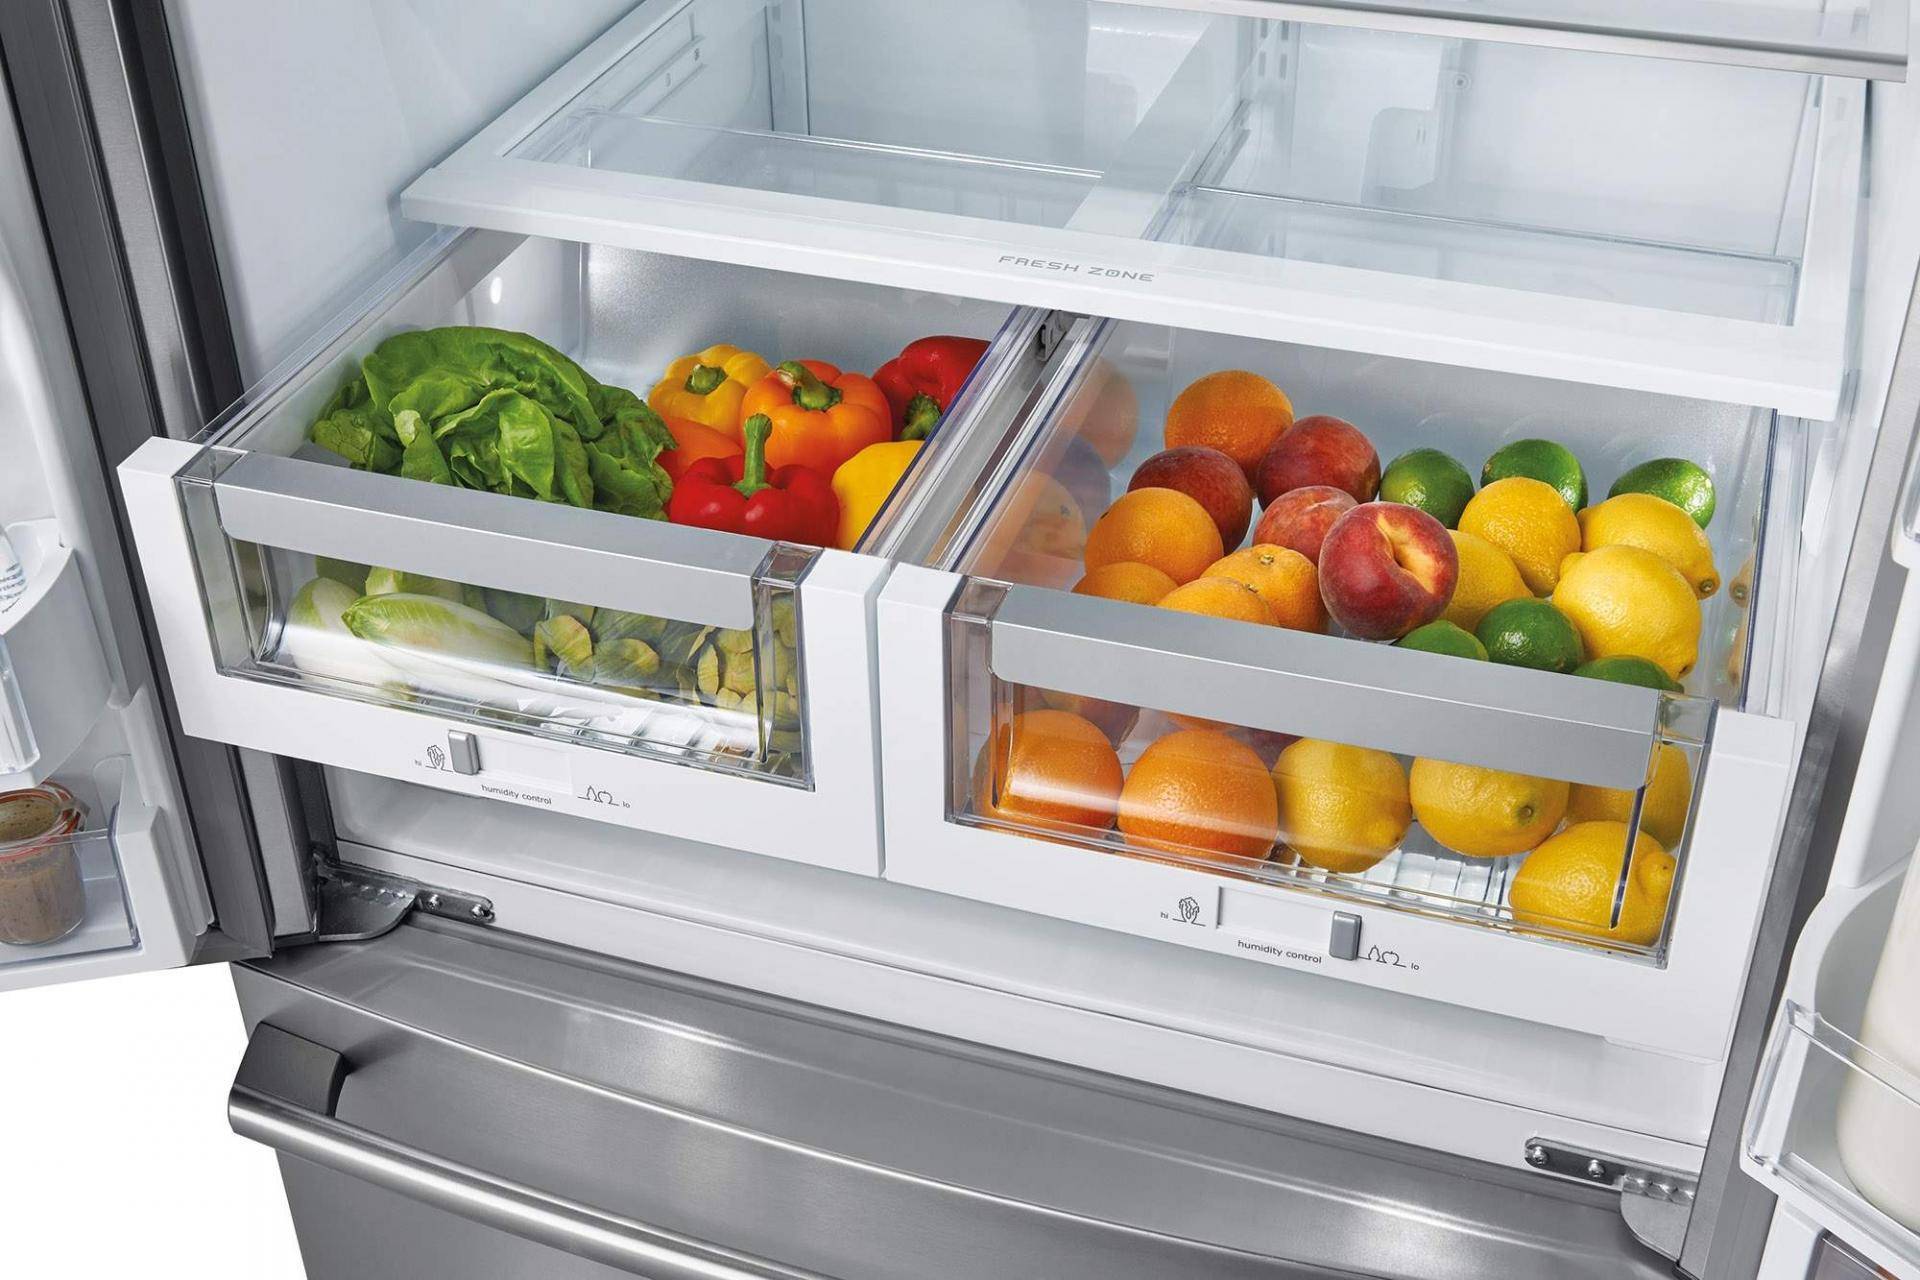 Зона свежести в холодильнике: что это такое, и нужна ли она, отзывы, нулевая камера, фреш, для чего, как работает